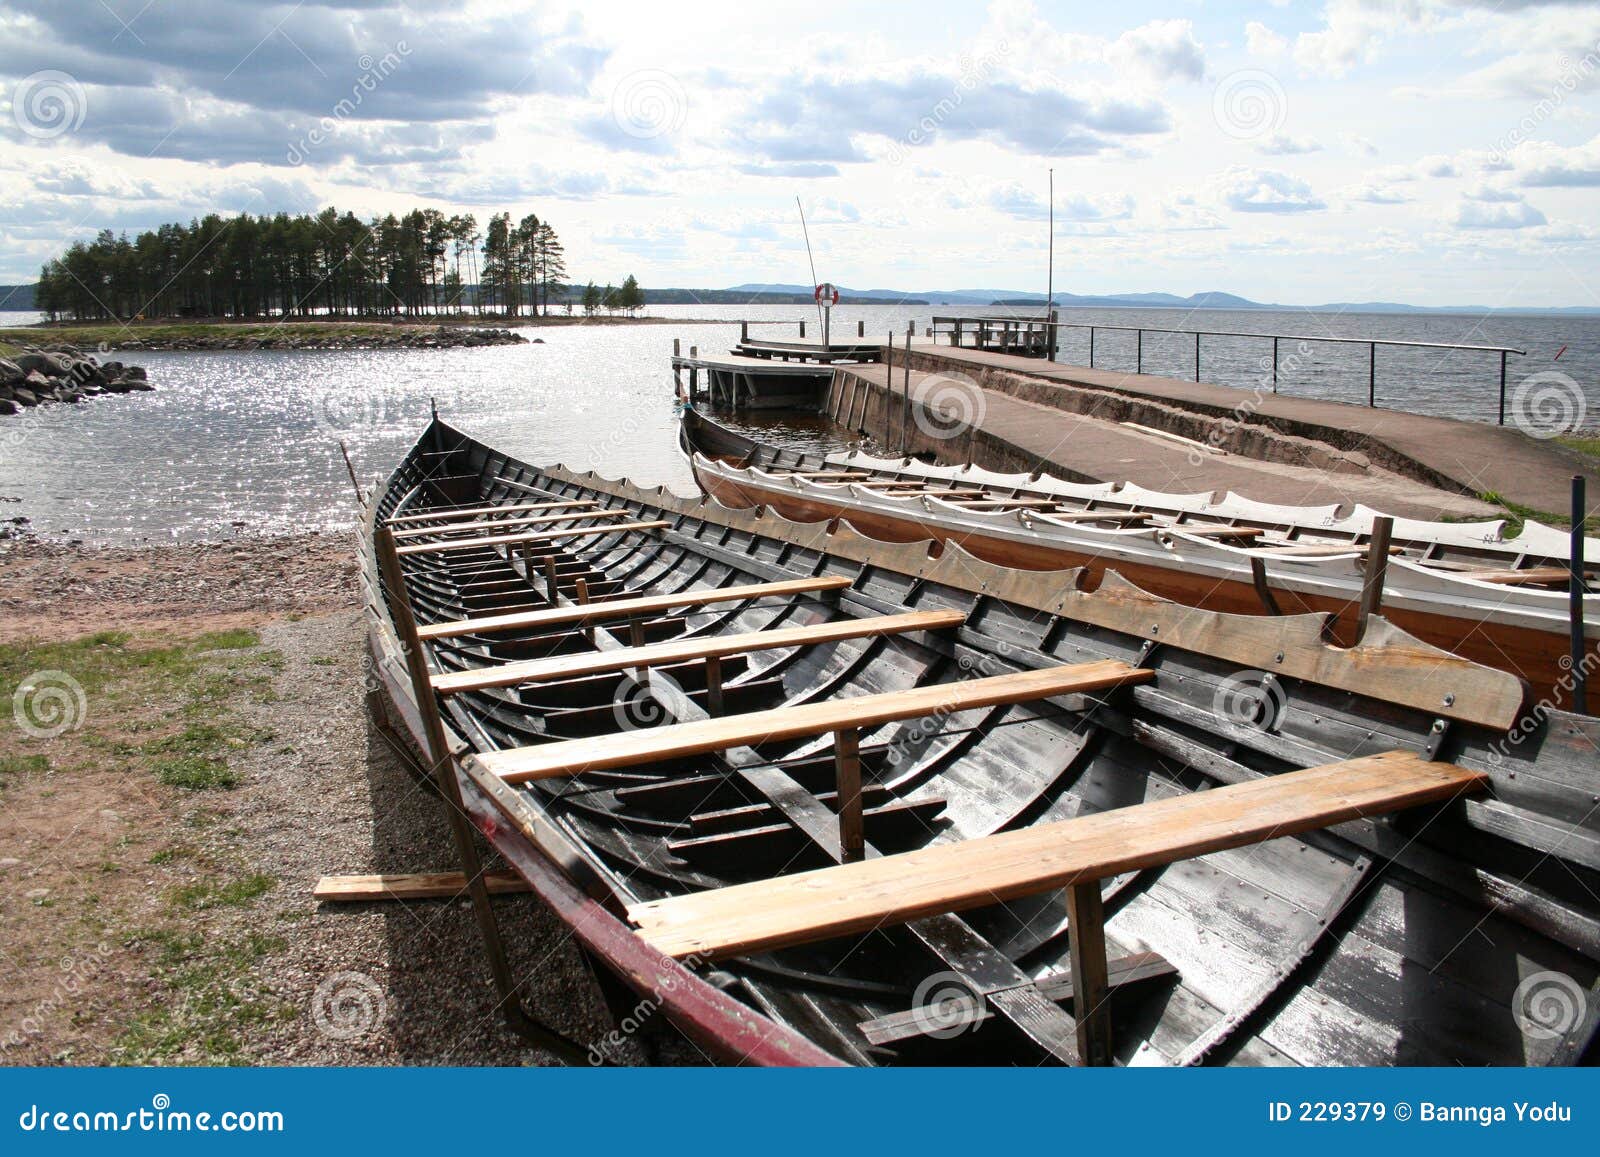 boats near tÃÂ¤llberg (dalarna, sweden)